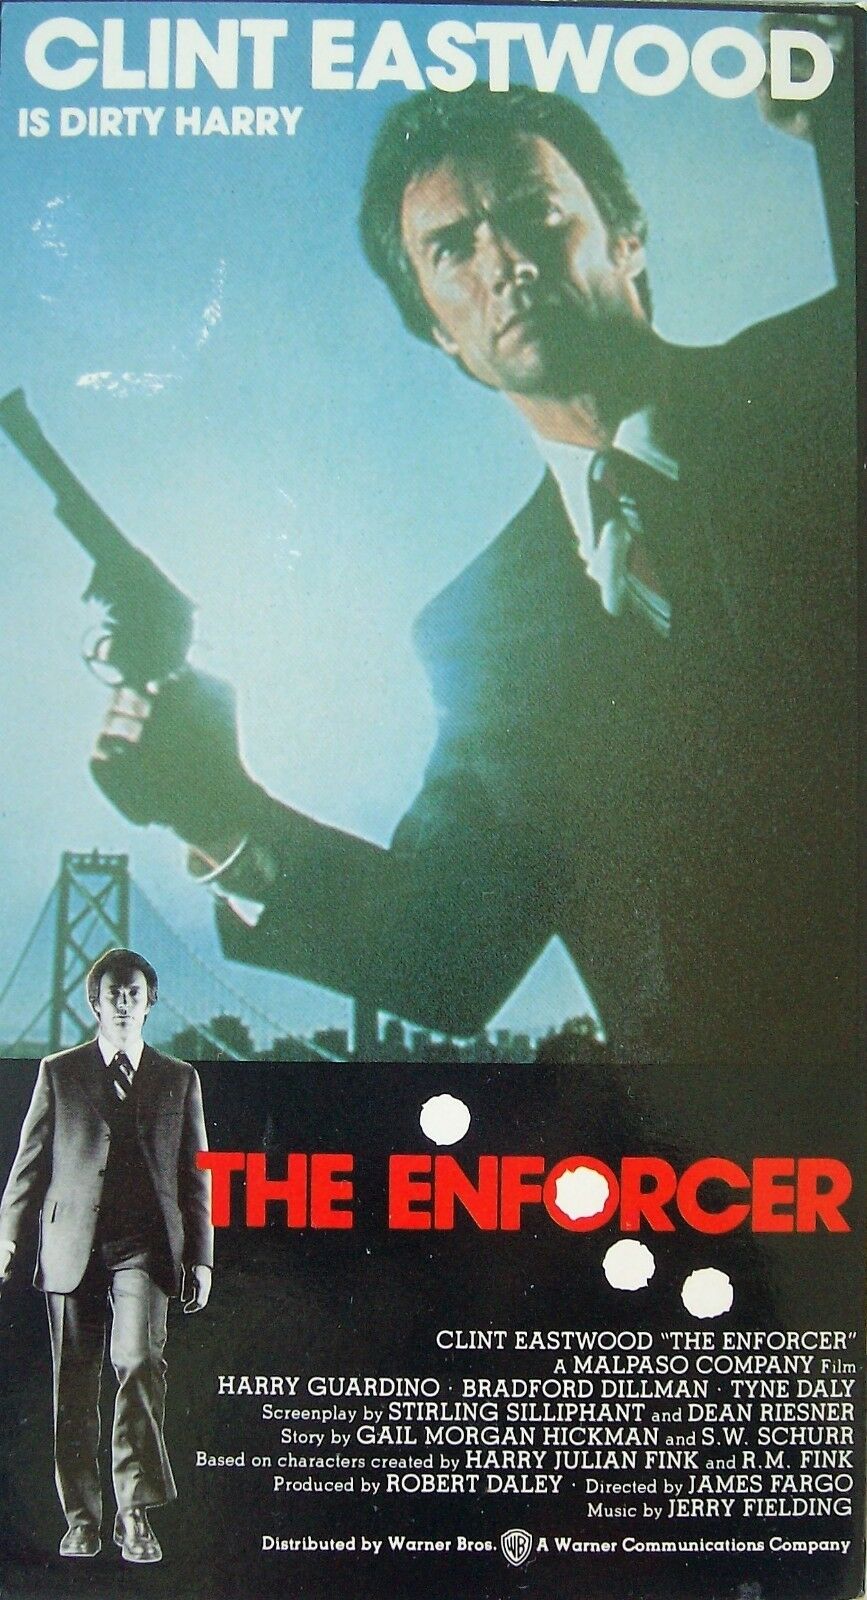 The Enforcer - Darkside Records